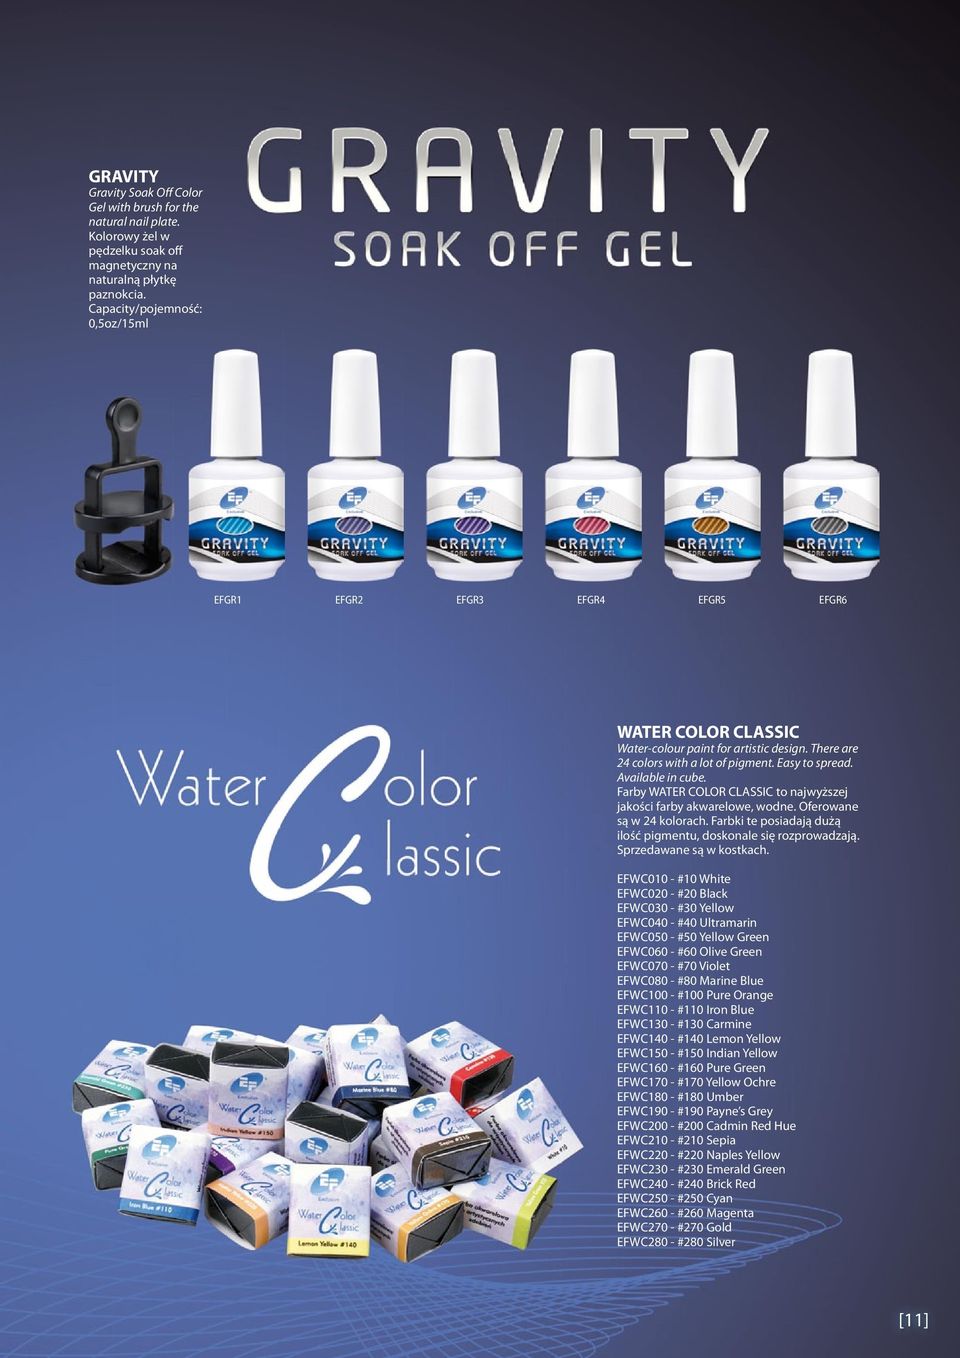 Available in cube. Farby WATER COLOR CLASSIC to najwyższej jakości farby akwarelowe, wodne. Oferowane są w 24 kolorach. Farbki te posiadają dużą ilość pigmentu, doskonale się rozprowadzają.